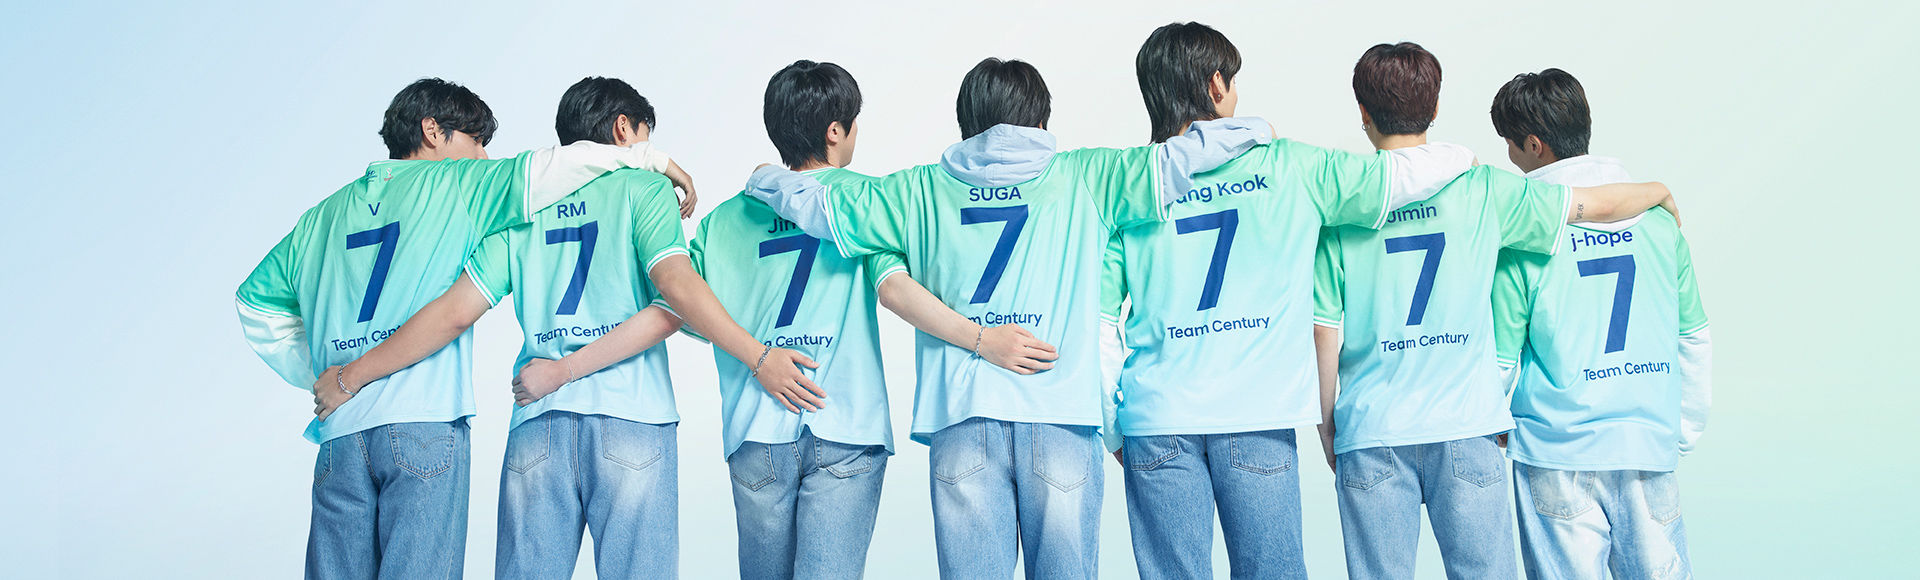 뒤돌아 나란히 서있는 7명의 방탄소년단 멤버들. 방탄소년단 멤버들은 청바지와 뒷면에 짙은 파란색의 숫자 7이 적힌 초록색과 회색의 Team Century 유니폼을 입고 있습니다.